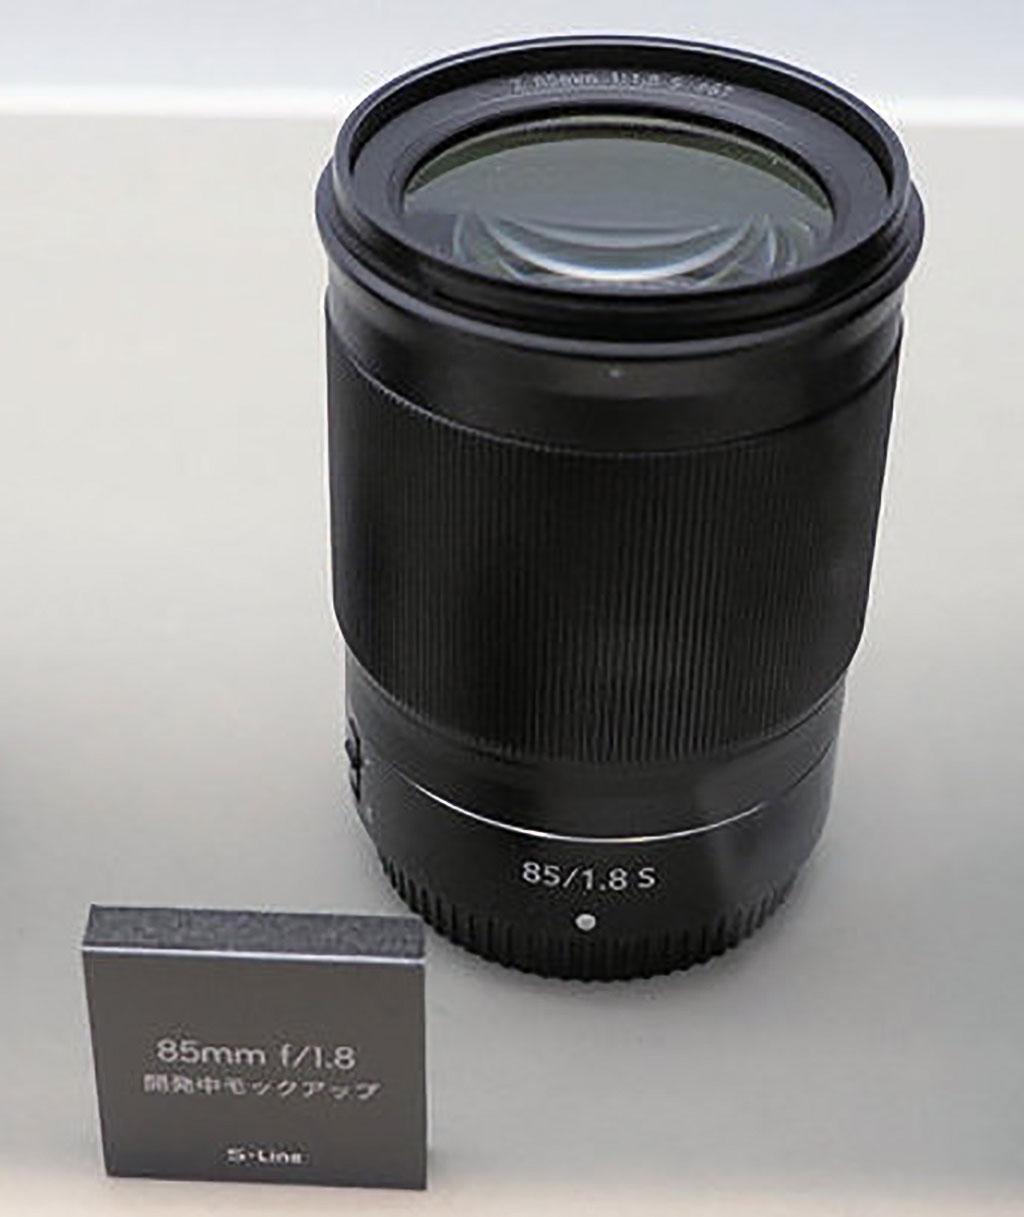 Đang tải Nikon-NIKKOR-Z-85mm-f1.8-S-mirrorless-lens2.jpg…